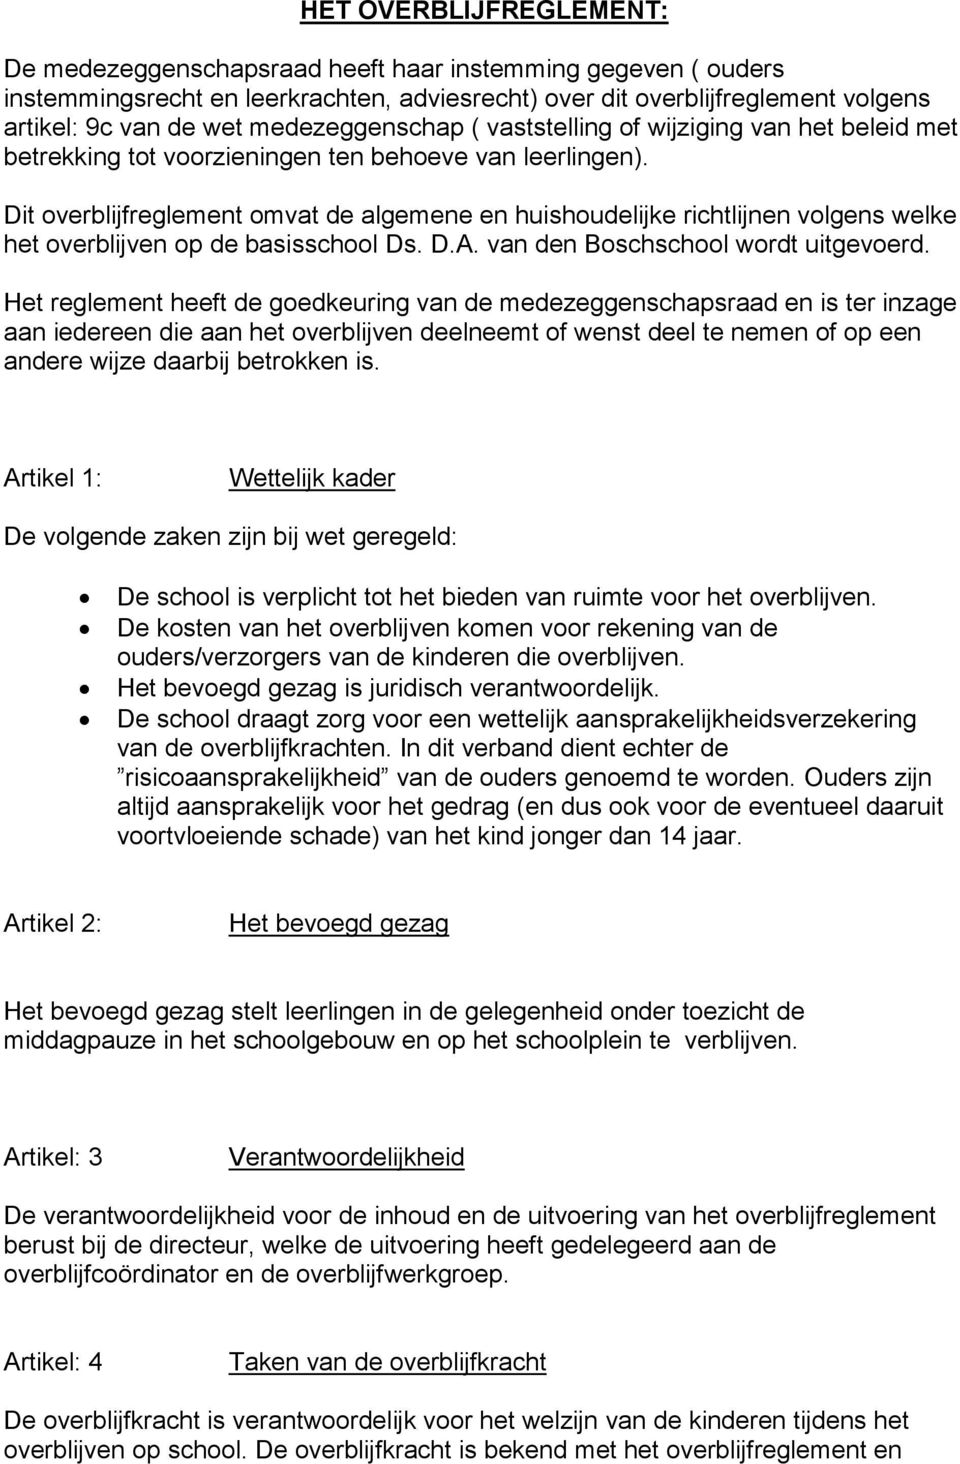 Dit overblijfreglement omvat de algemene en huishoudelijke richtlijnen volgens welke het overblijven op de basisschool Ds. D.A. van den Boschschool wordt uitgevoerd.